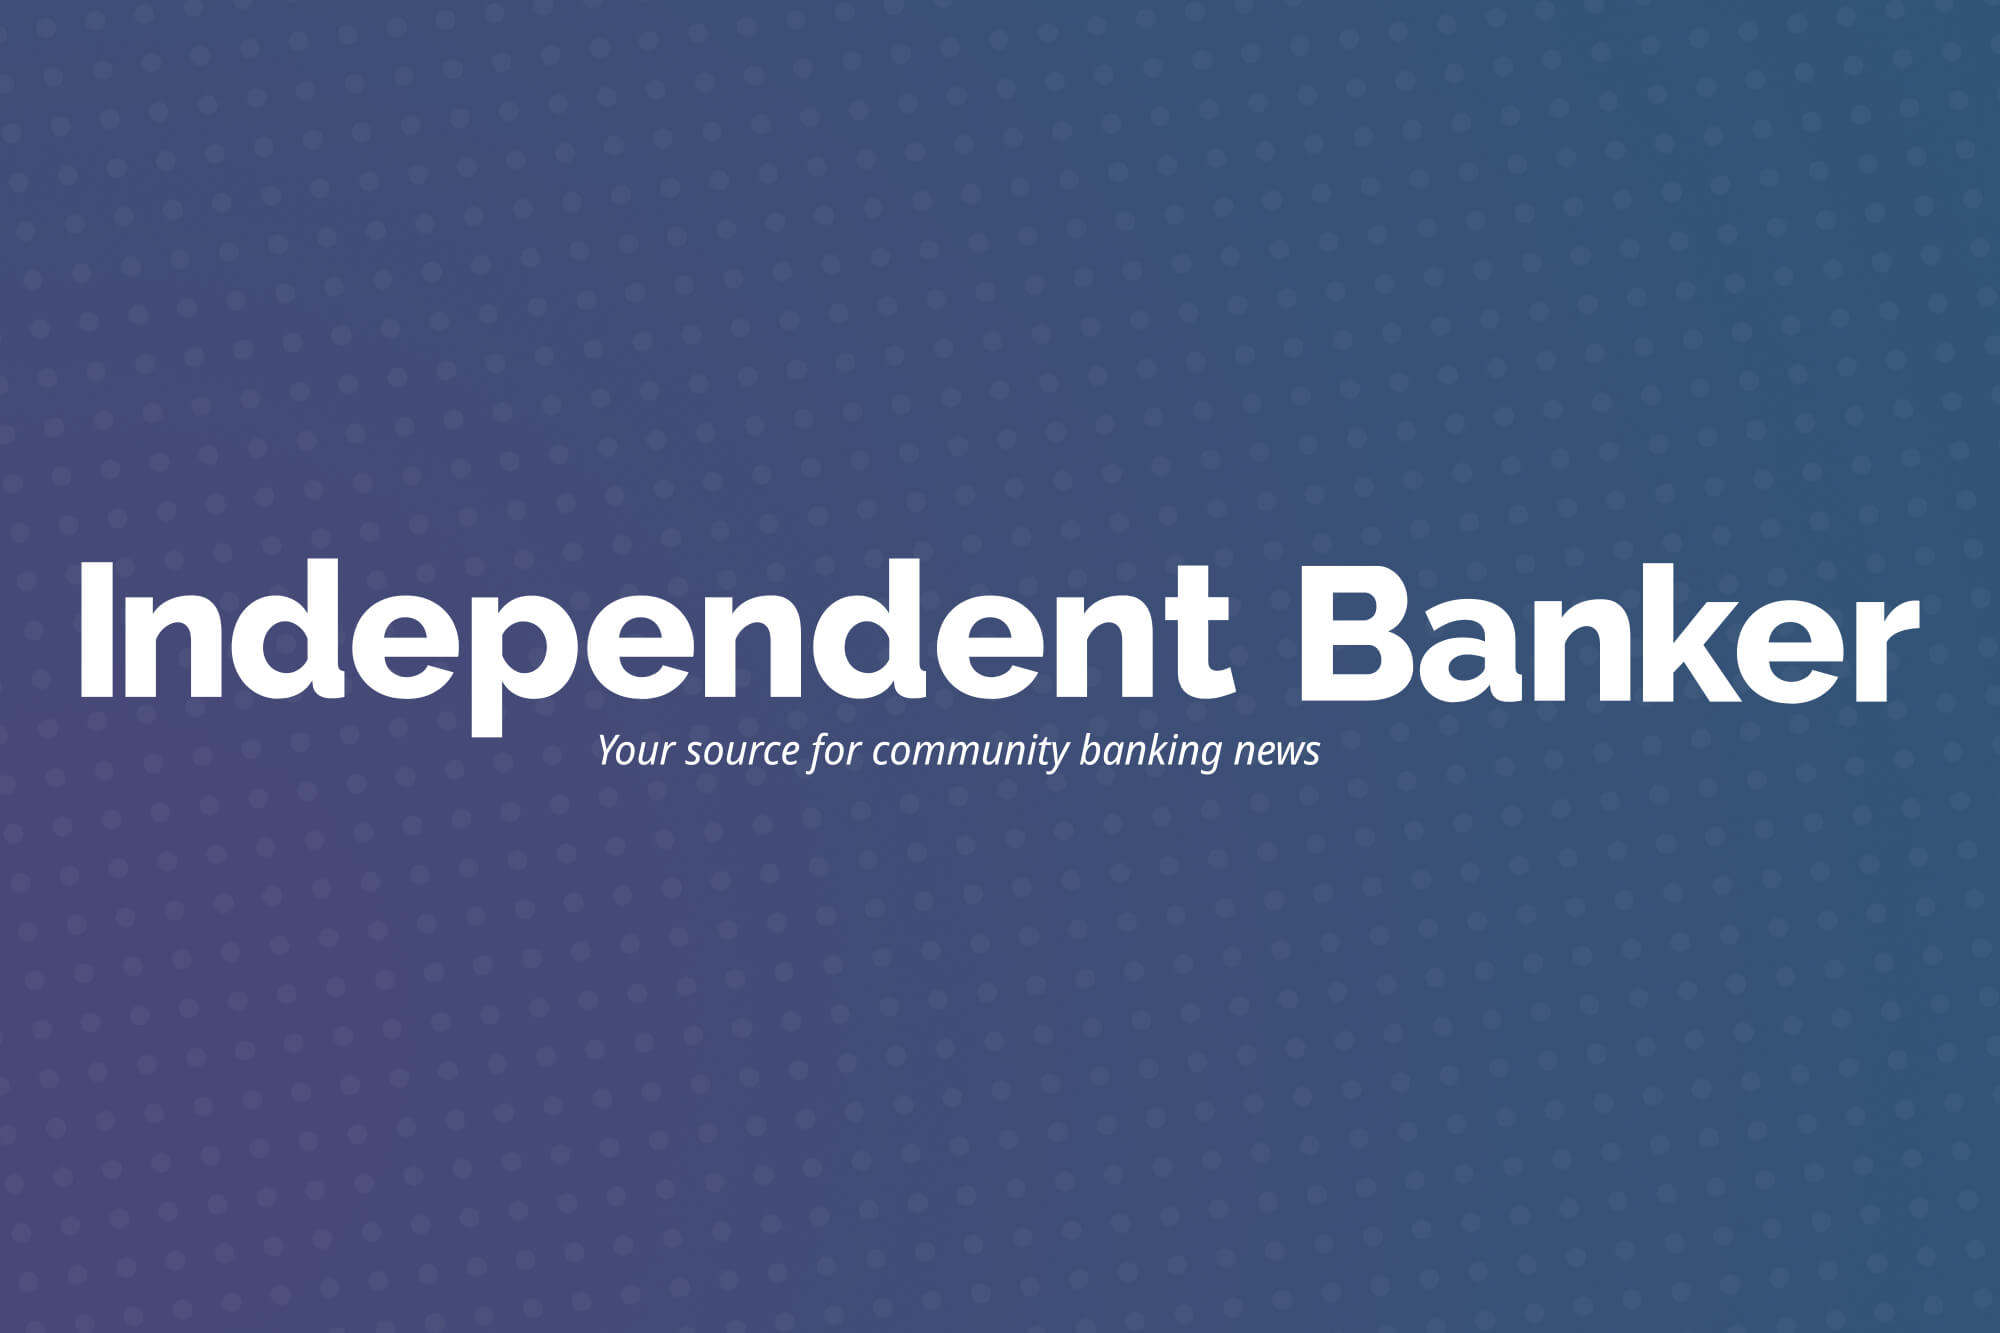 (c) Independentbanker.org